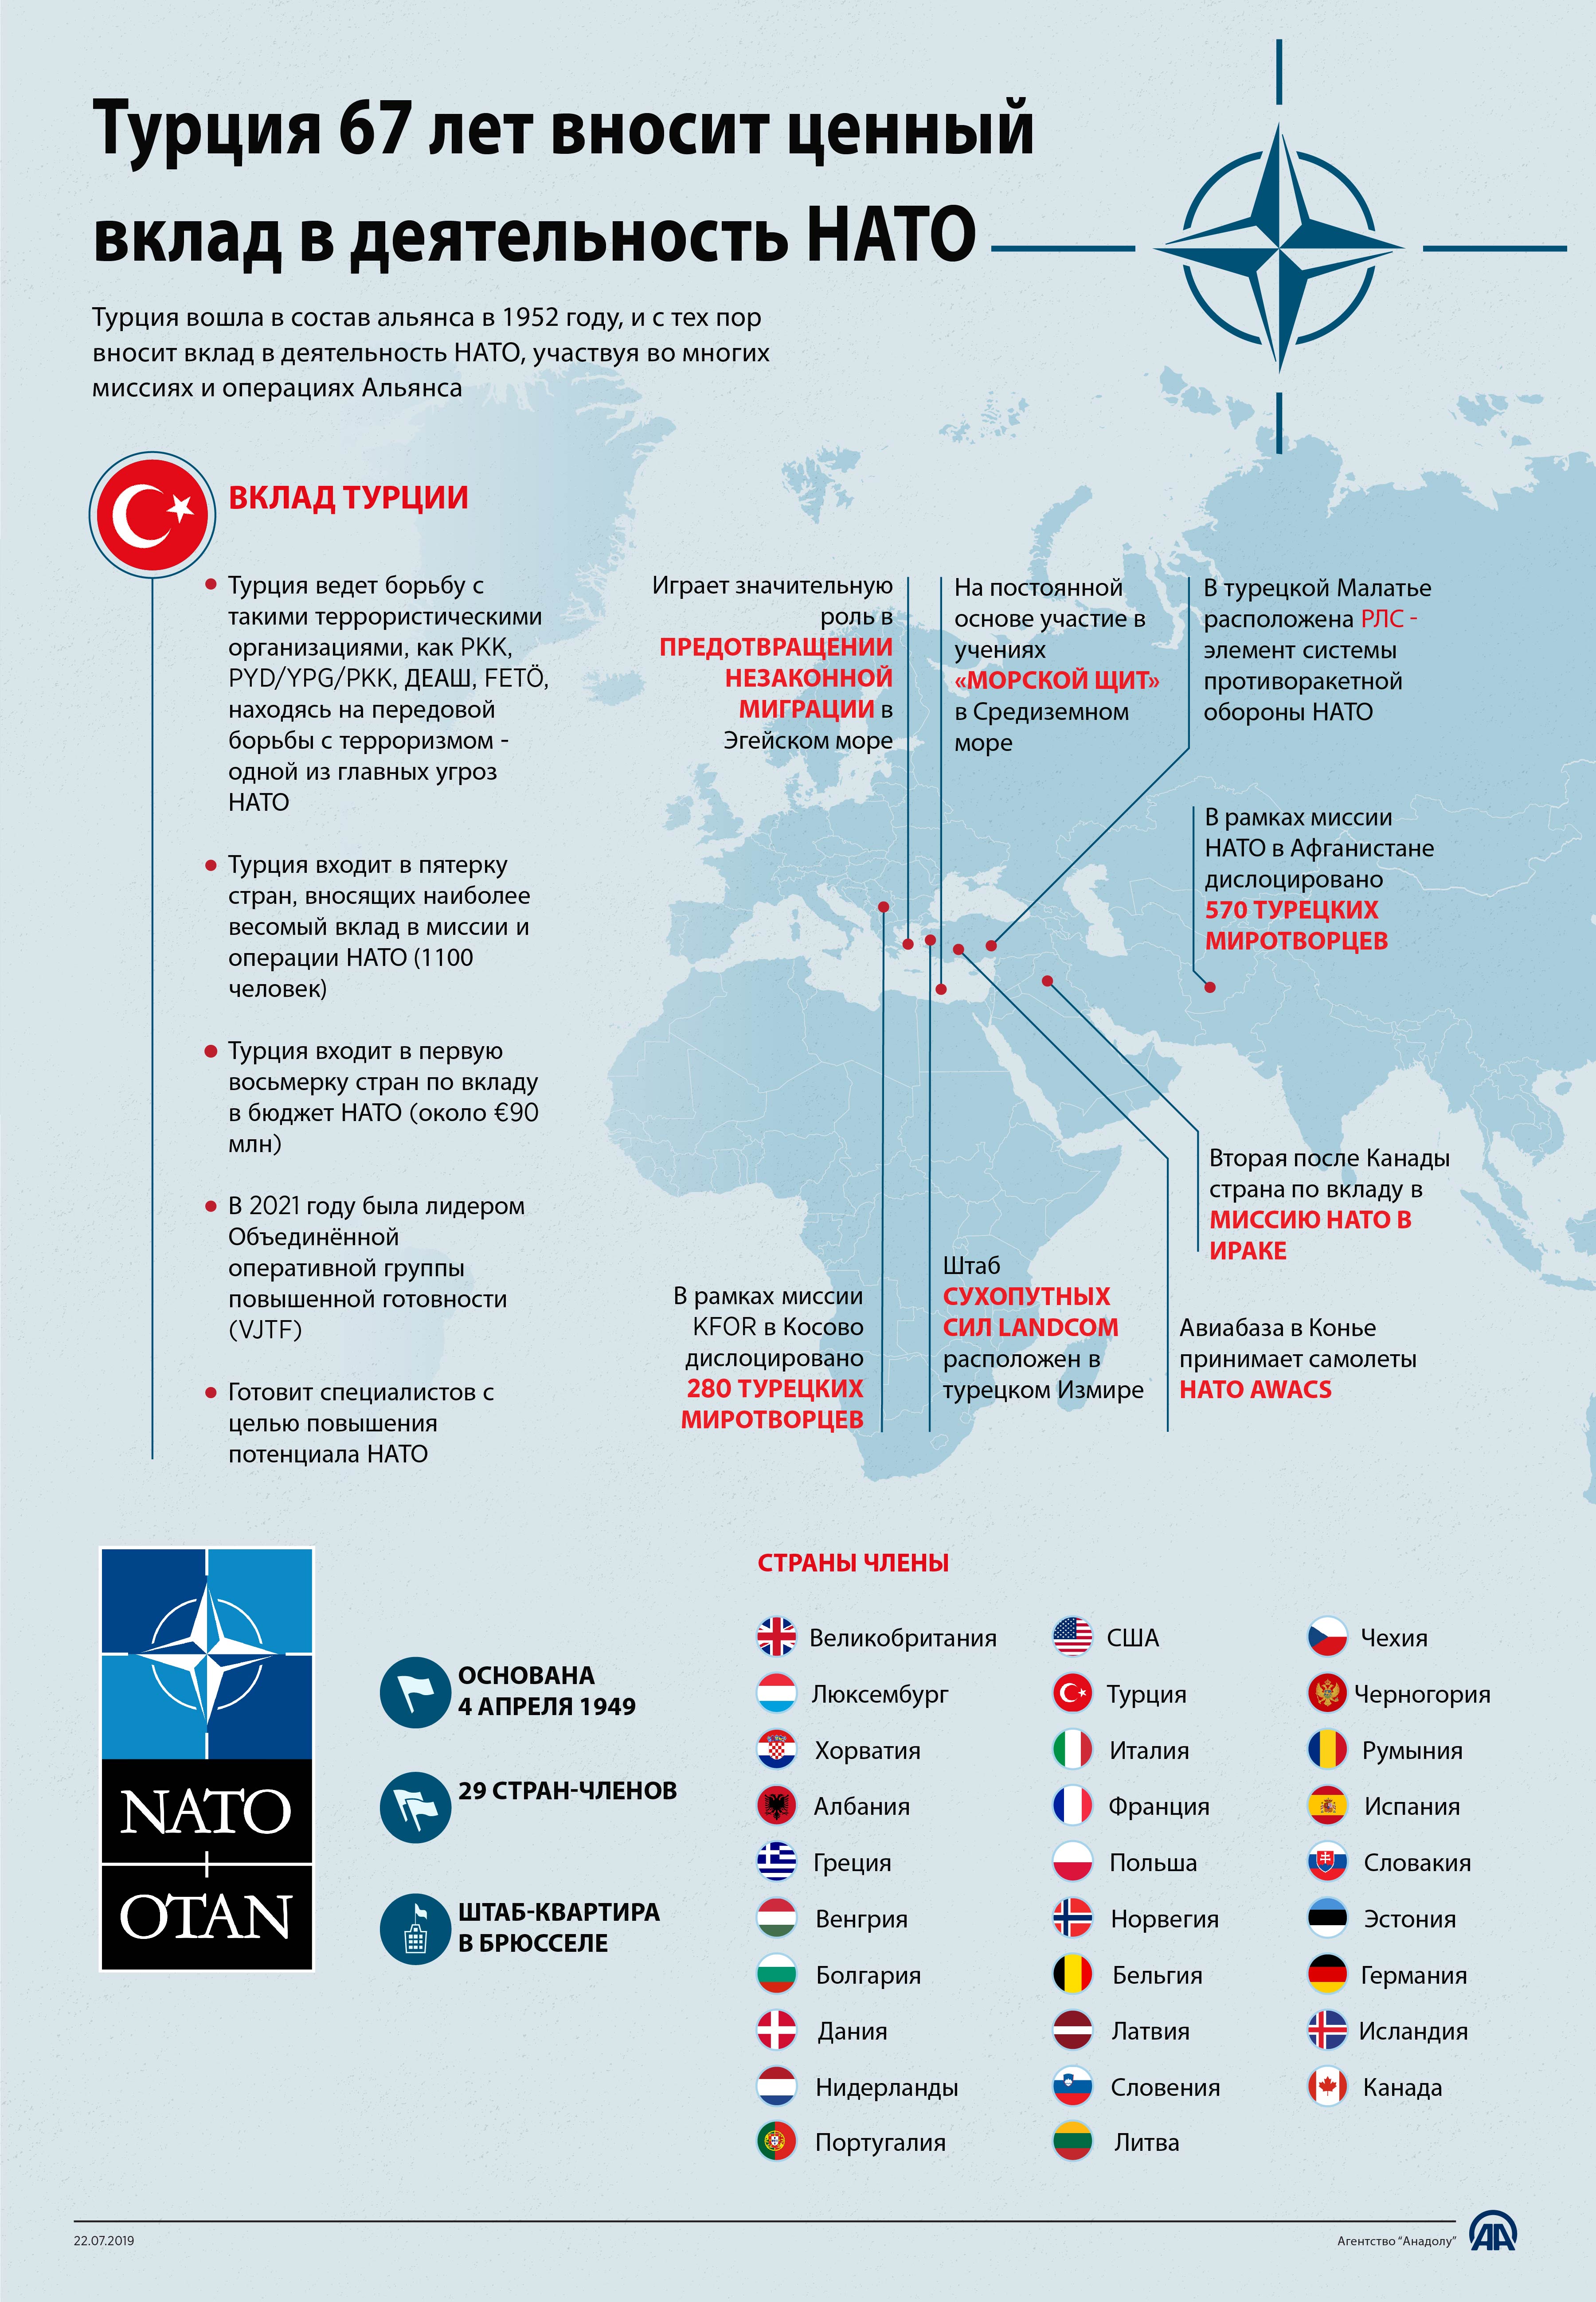 Участницы нато. Государства входящие в состав НАТО. Какие страны входят входят в НАТО. Состав НАТО. НАТО страны участники.